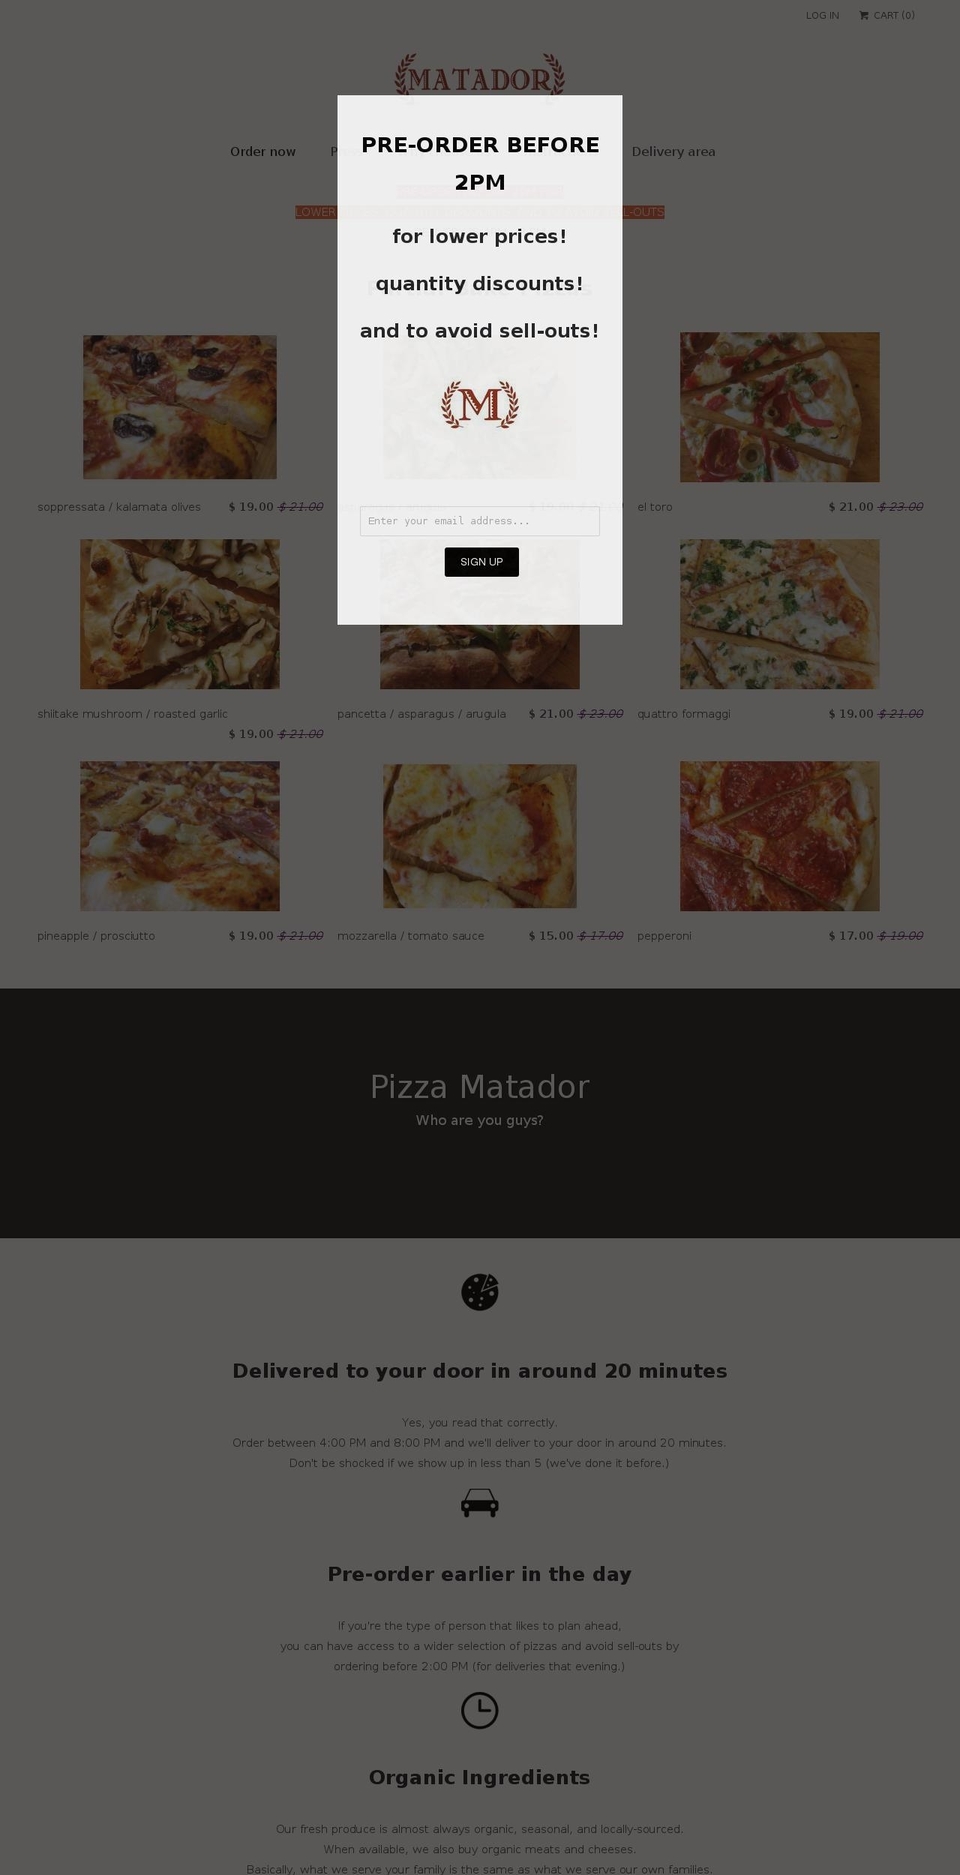 Venue Shopify theme site example pizzamatador.com